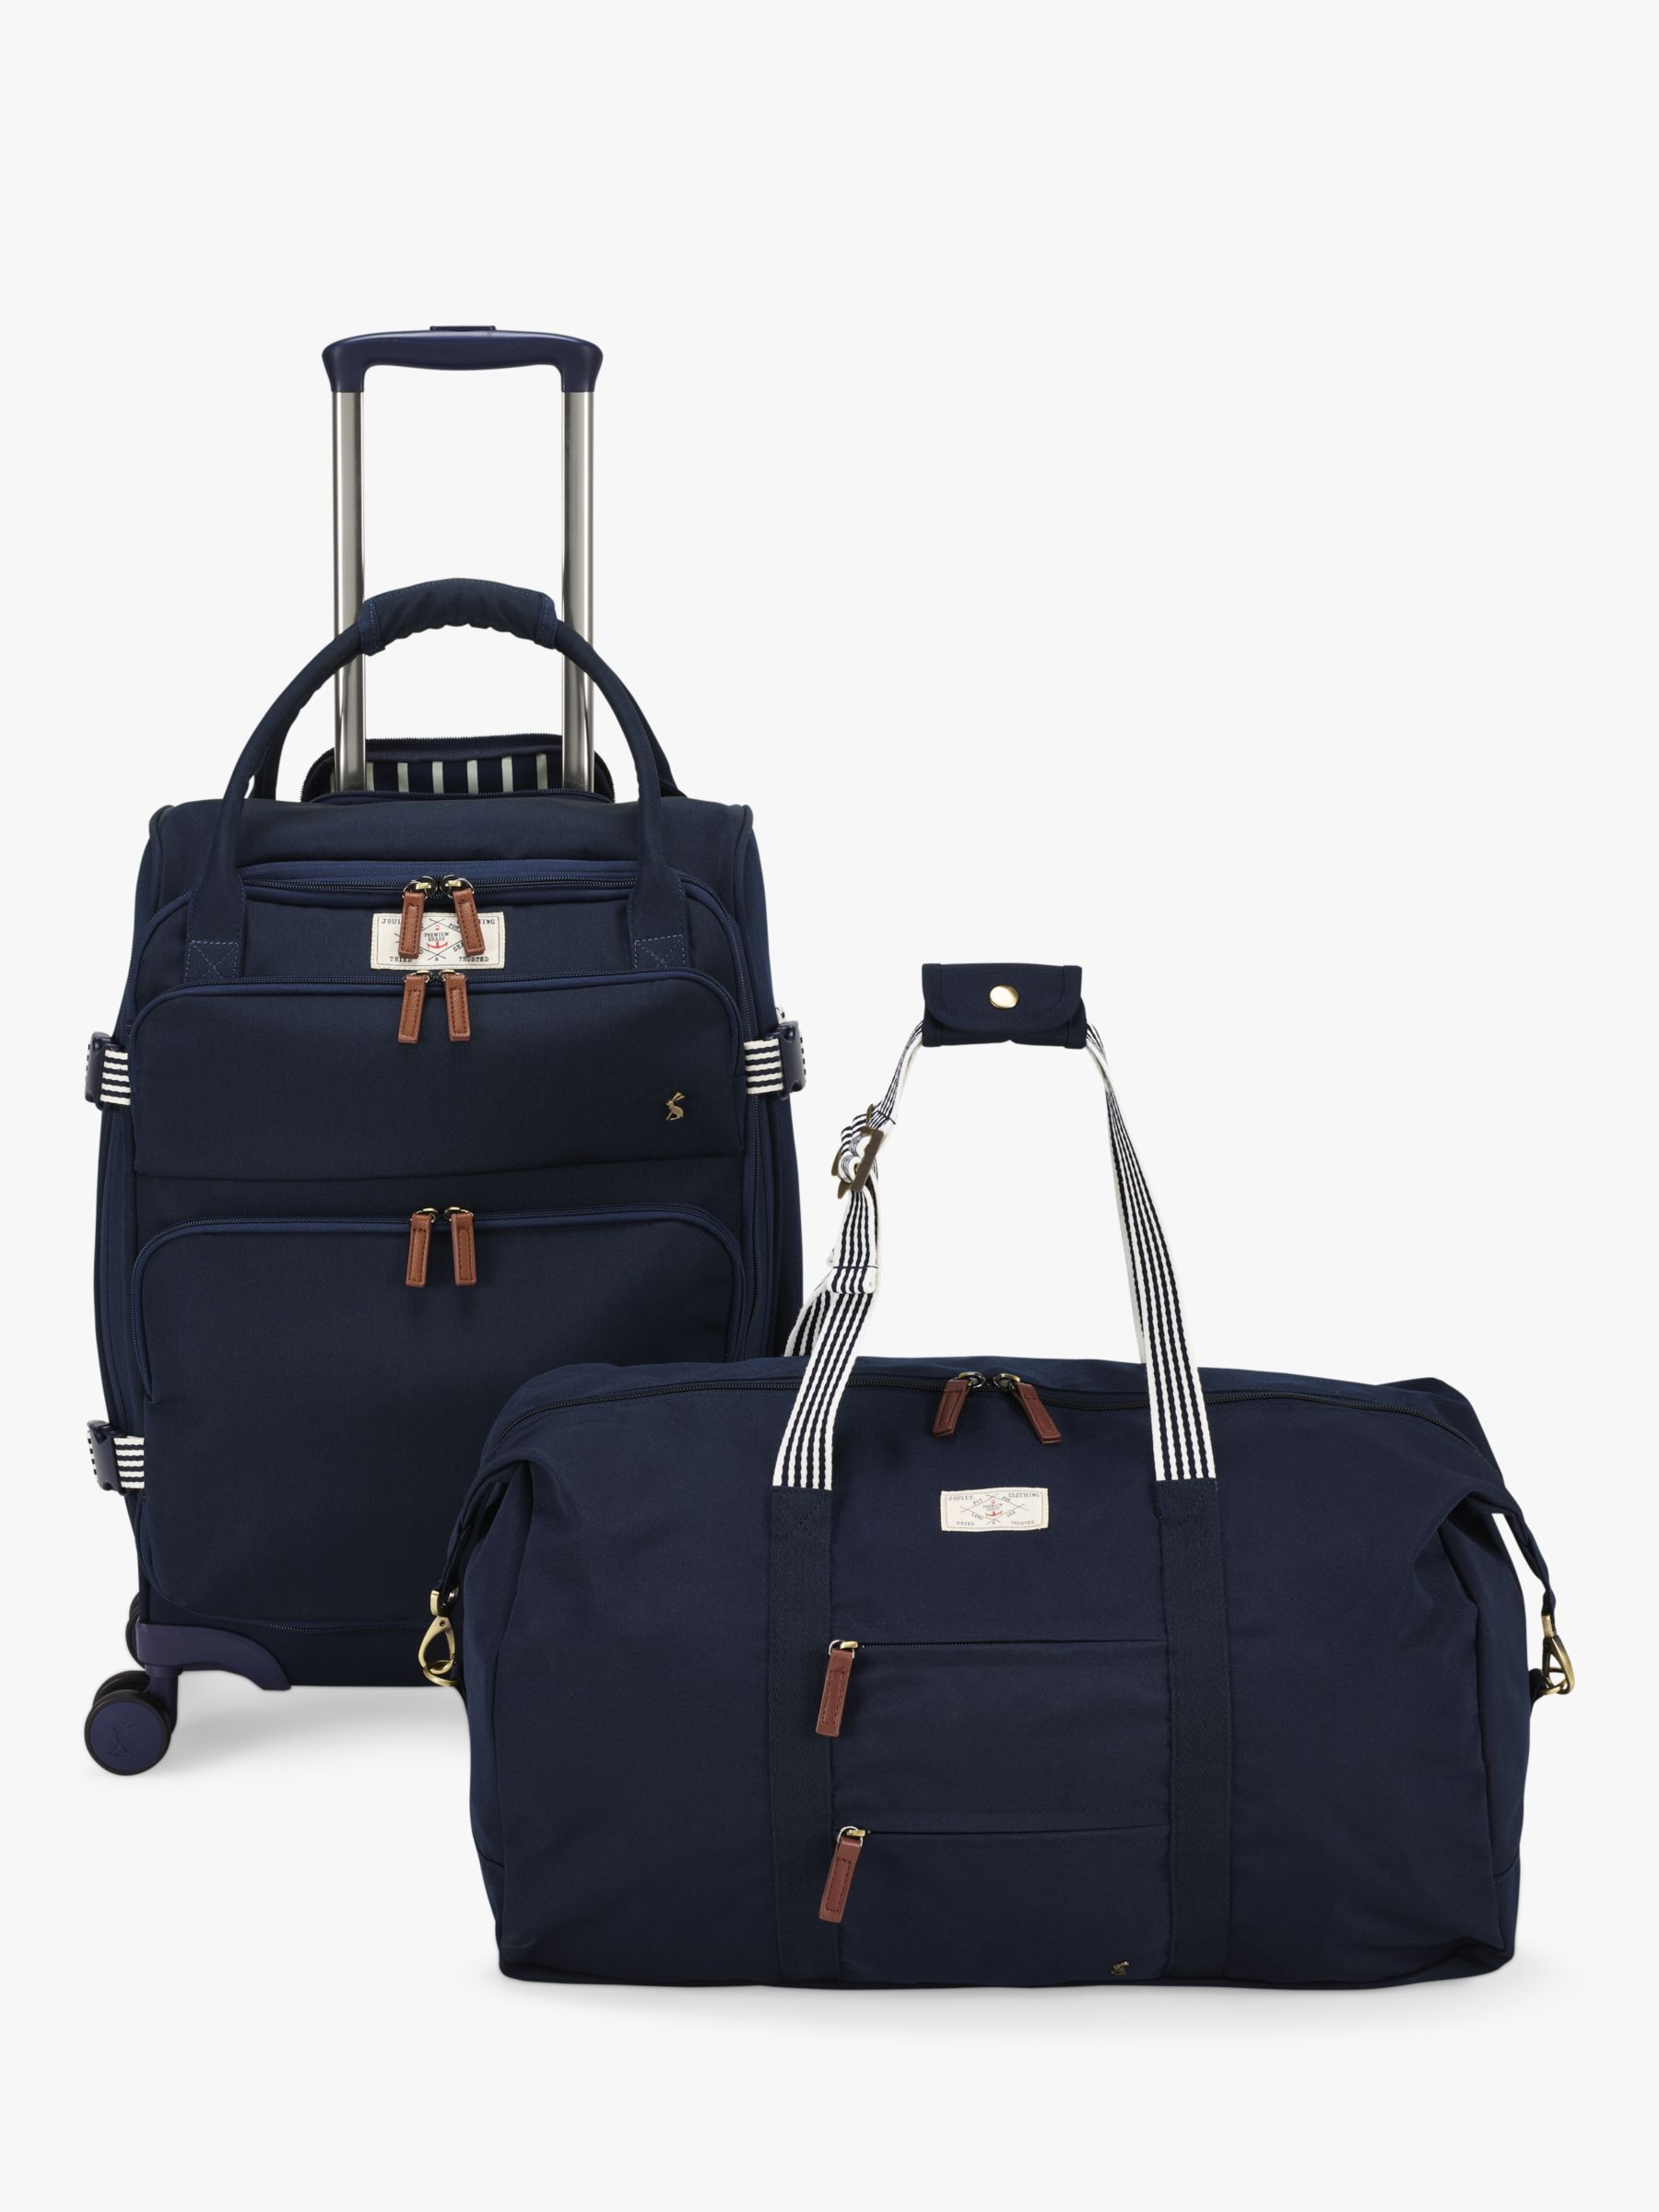 Authentic Louis Vuitton Luggage Strap Travel Bag Duffel Case